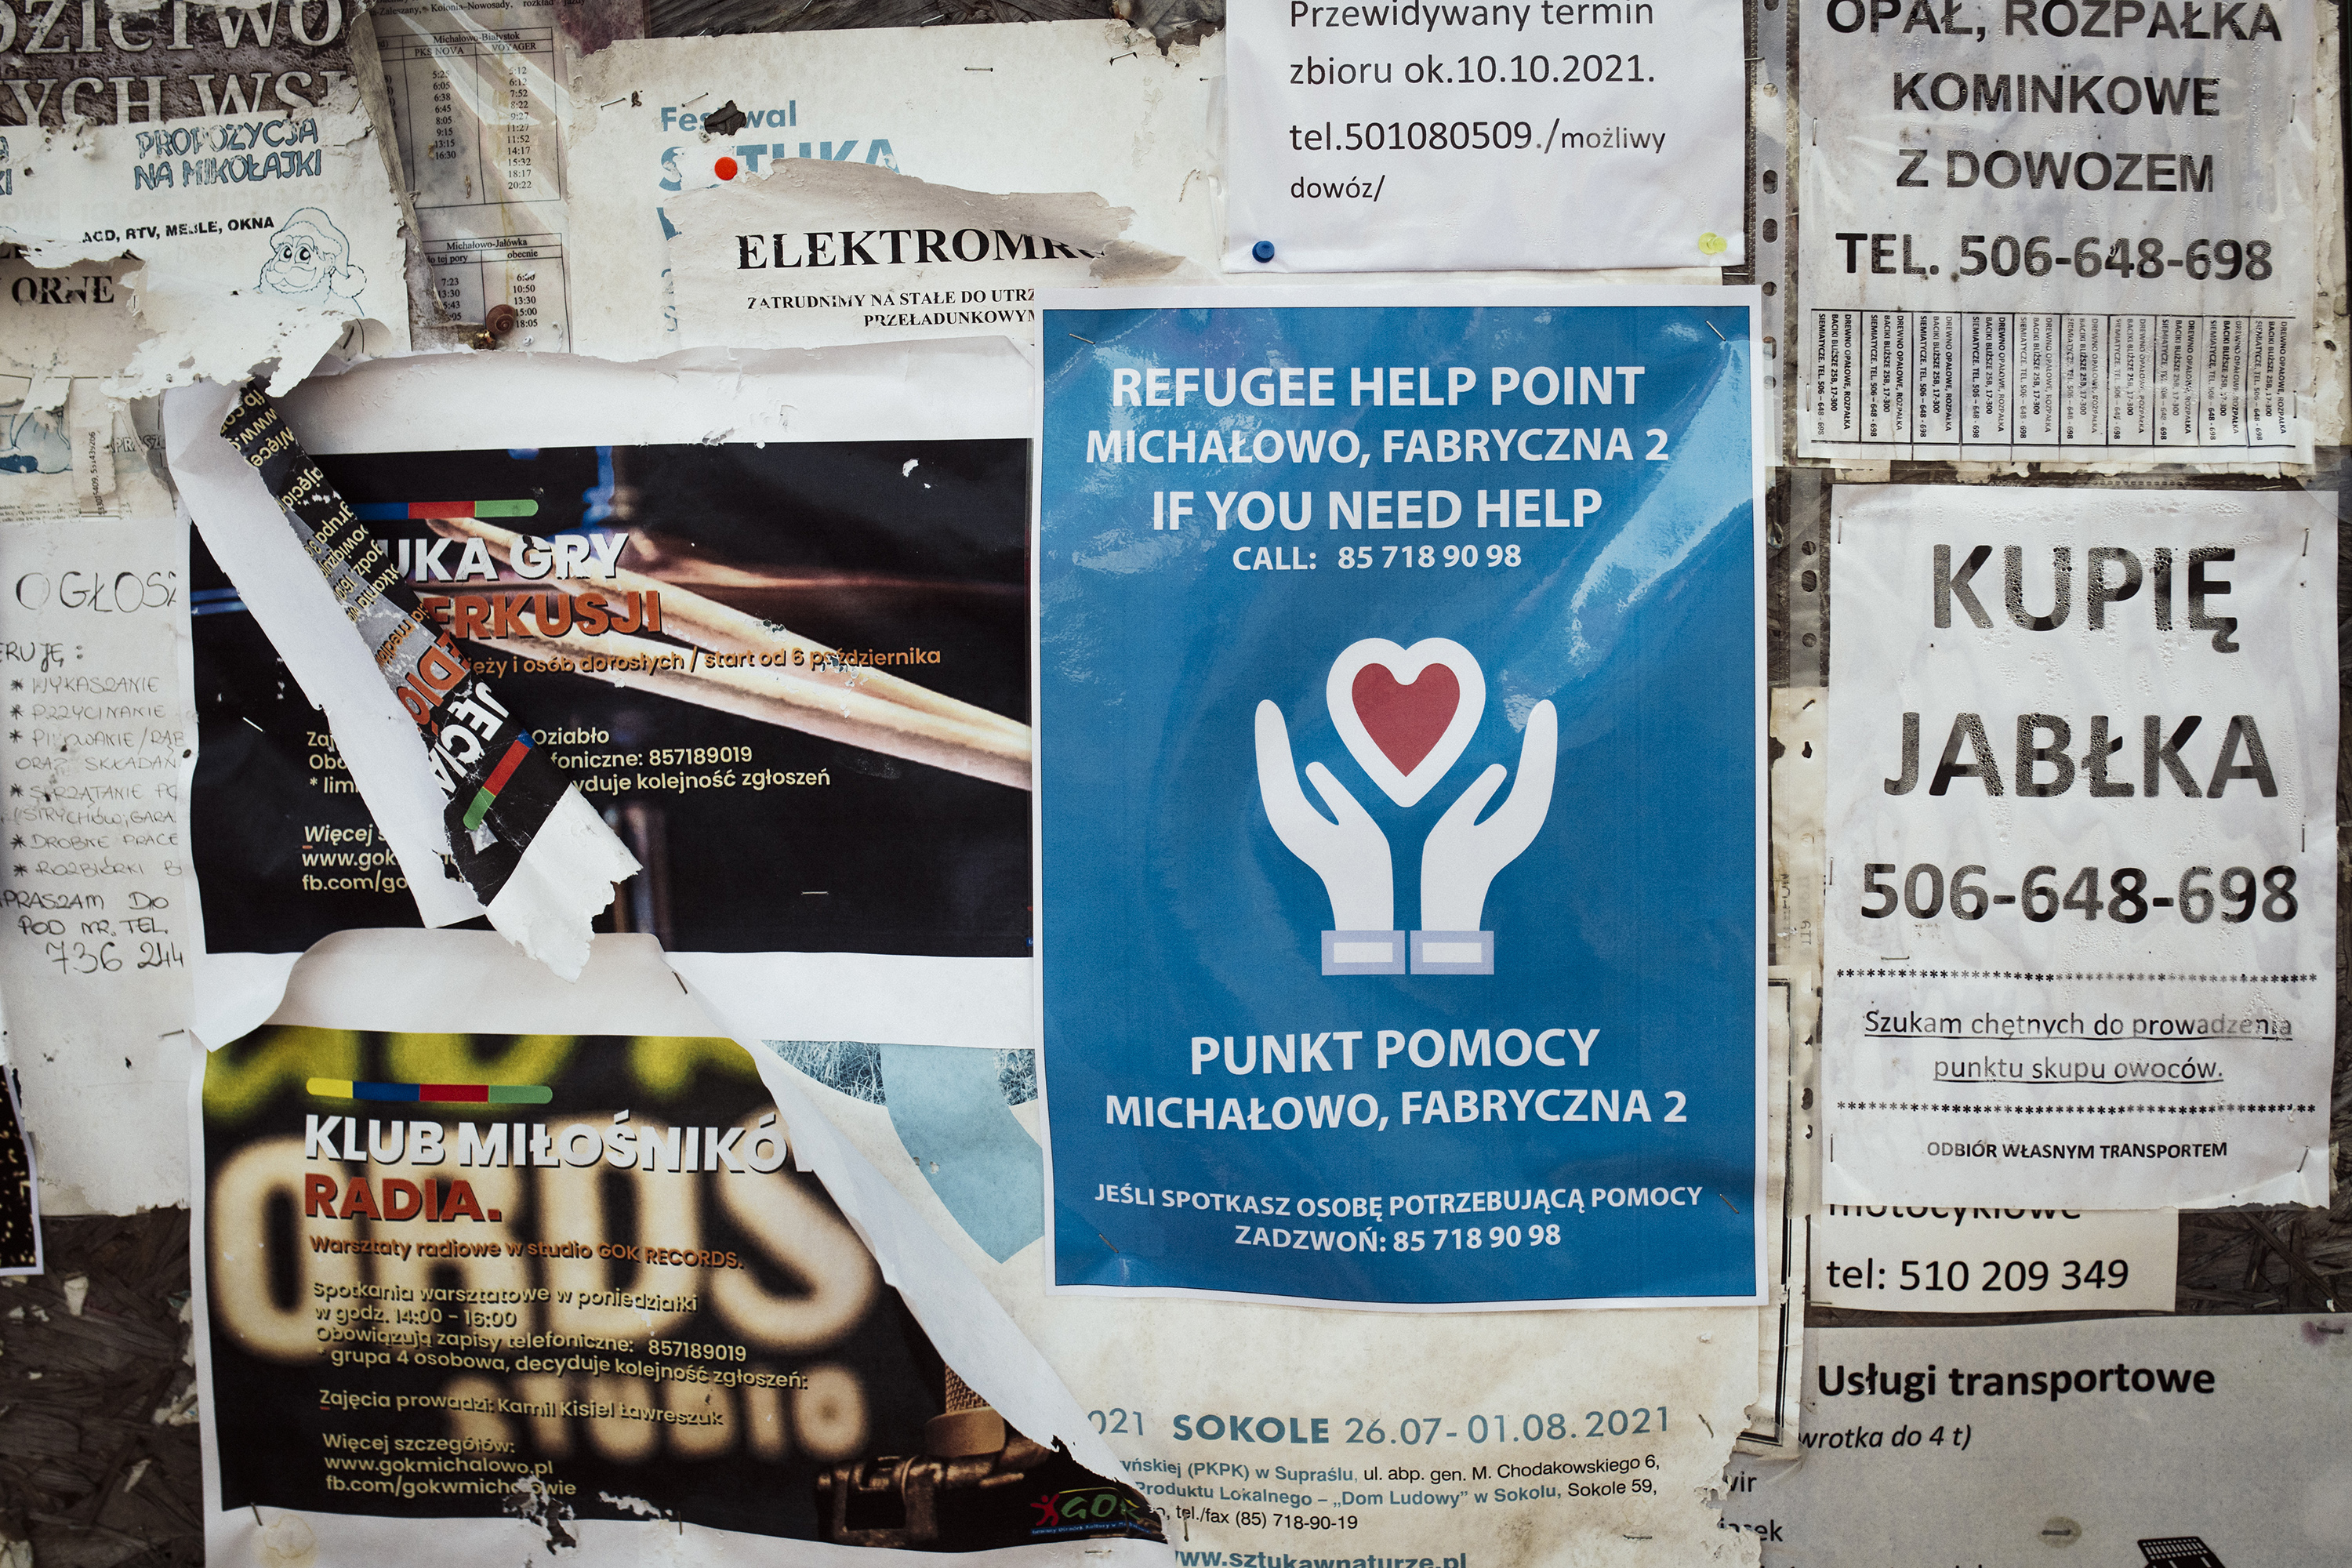  Plakat informujący uchodźców o punkcie pomocy.